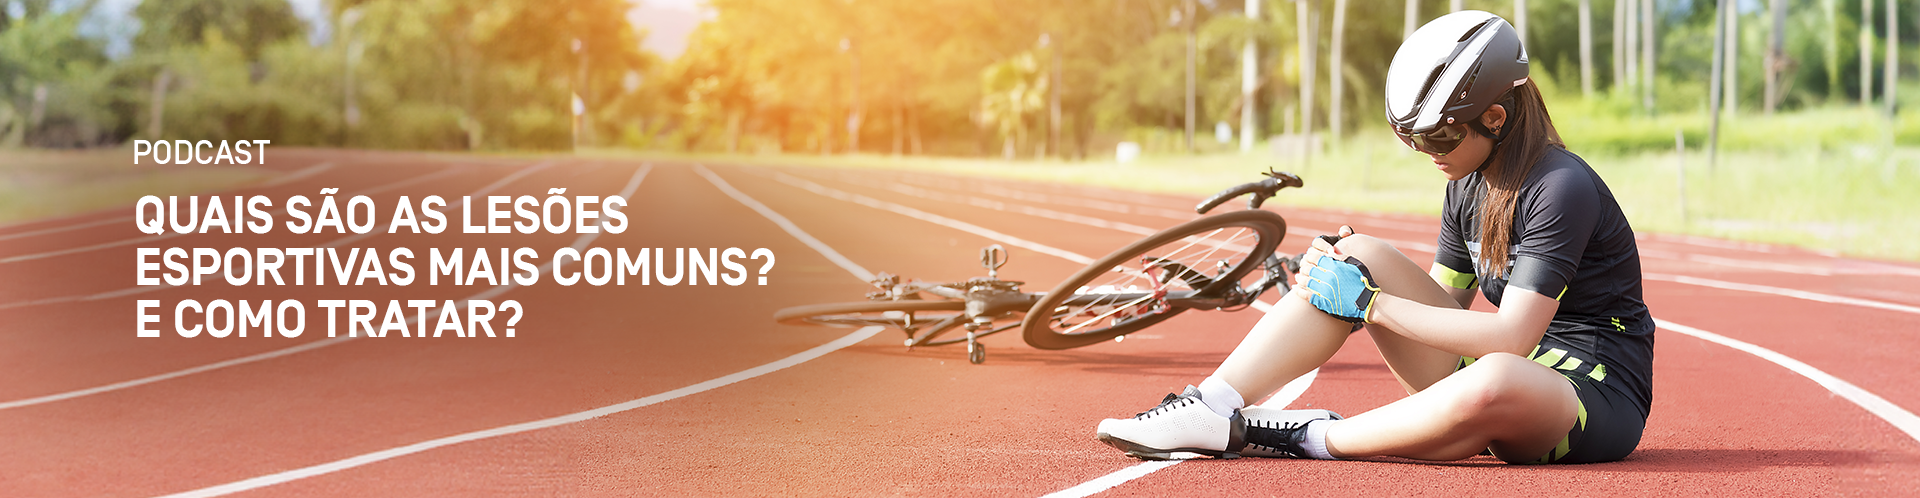 Quais são as lesões esportivas mais comuns? E como tratar?